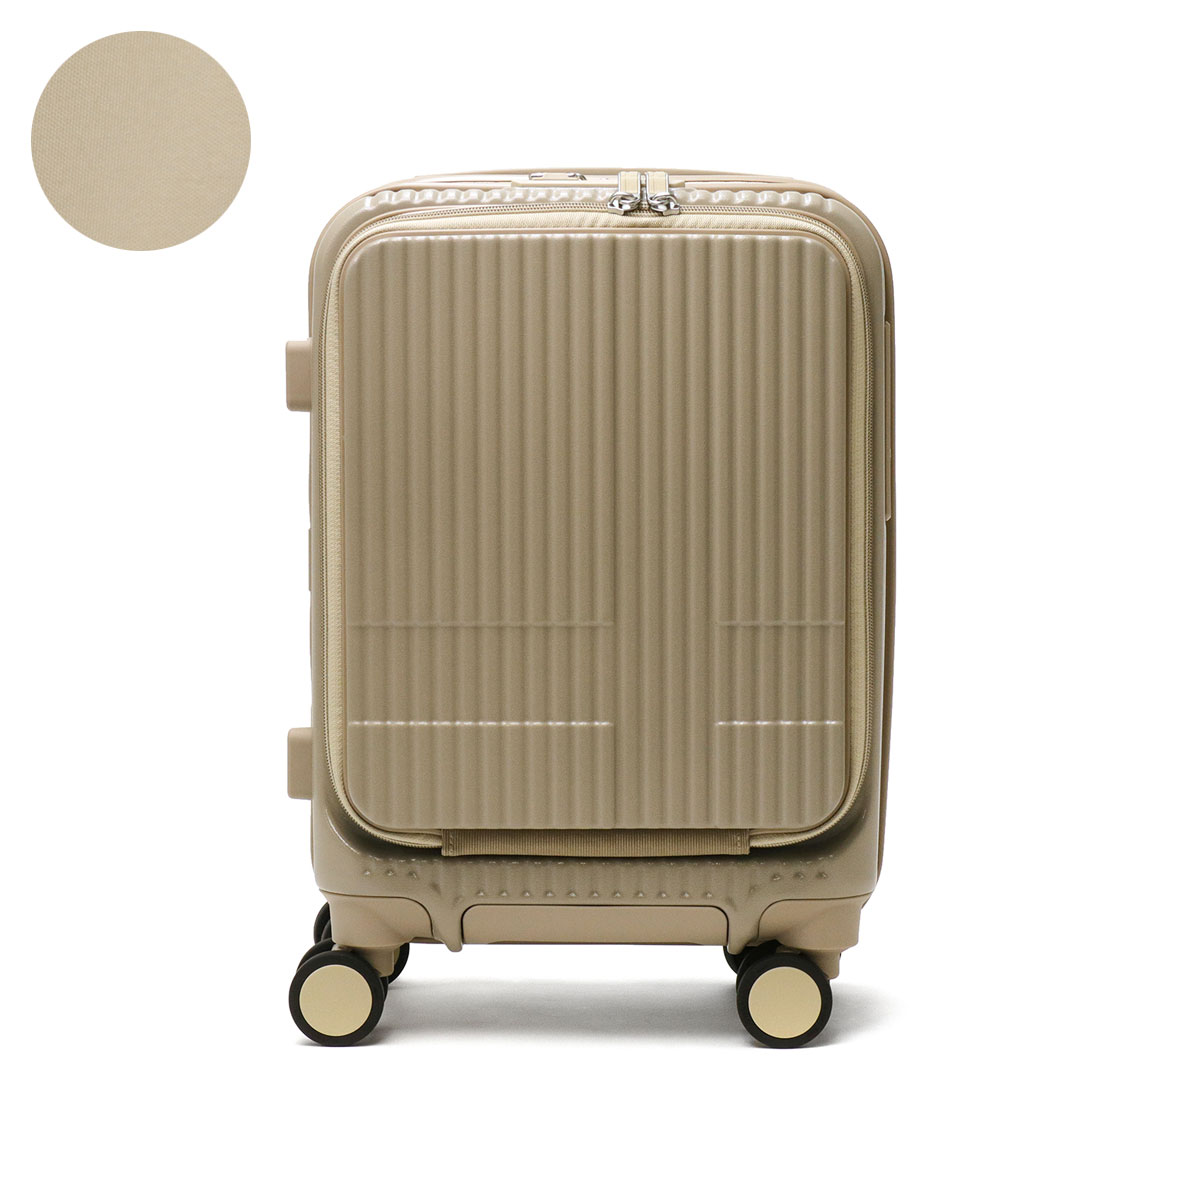 最大41%★5/12限定 正規品2年保証 イノベーター スーツケース 機内持ち込み Sサイズ inn...